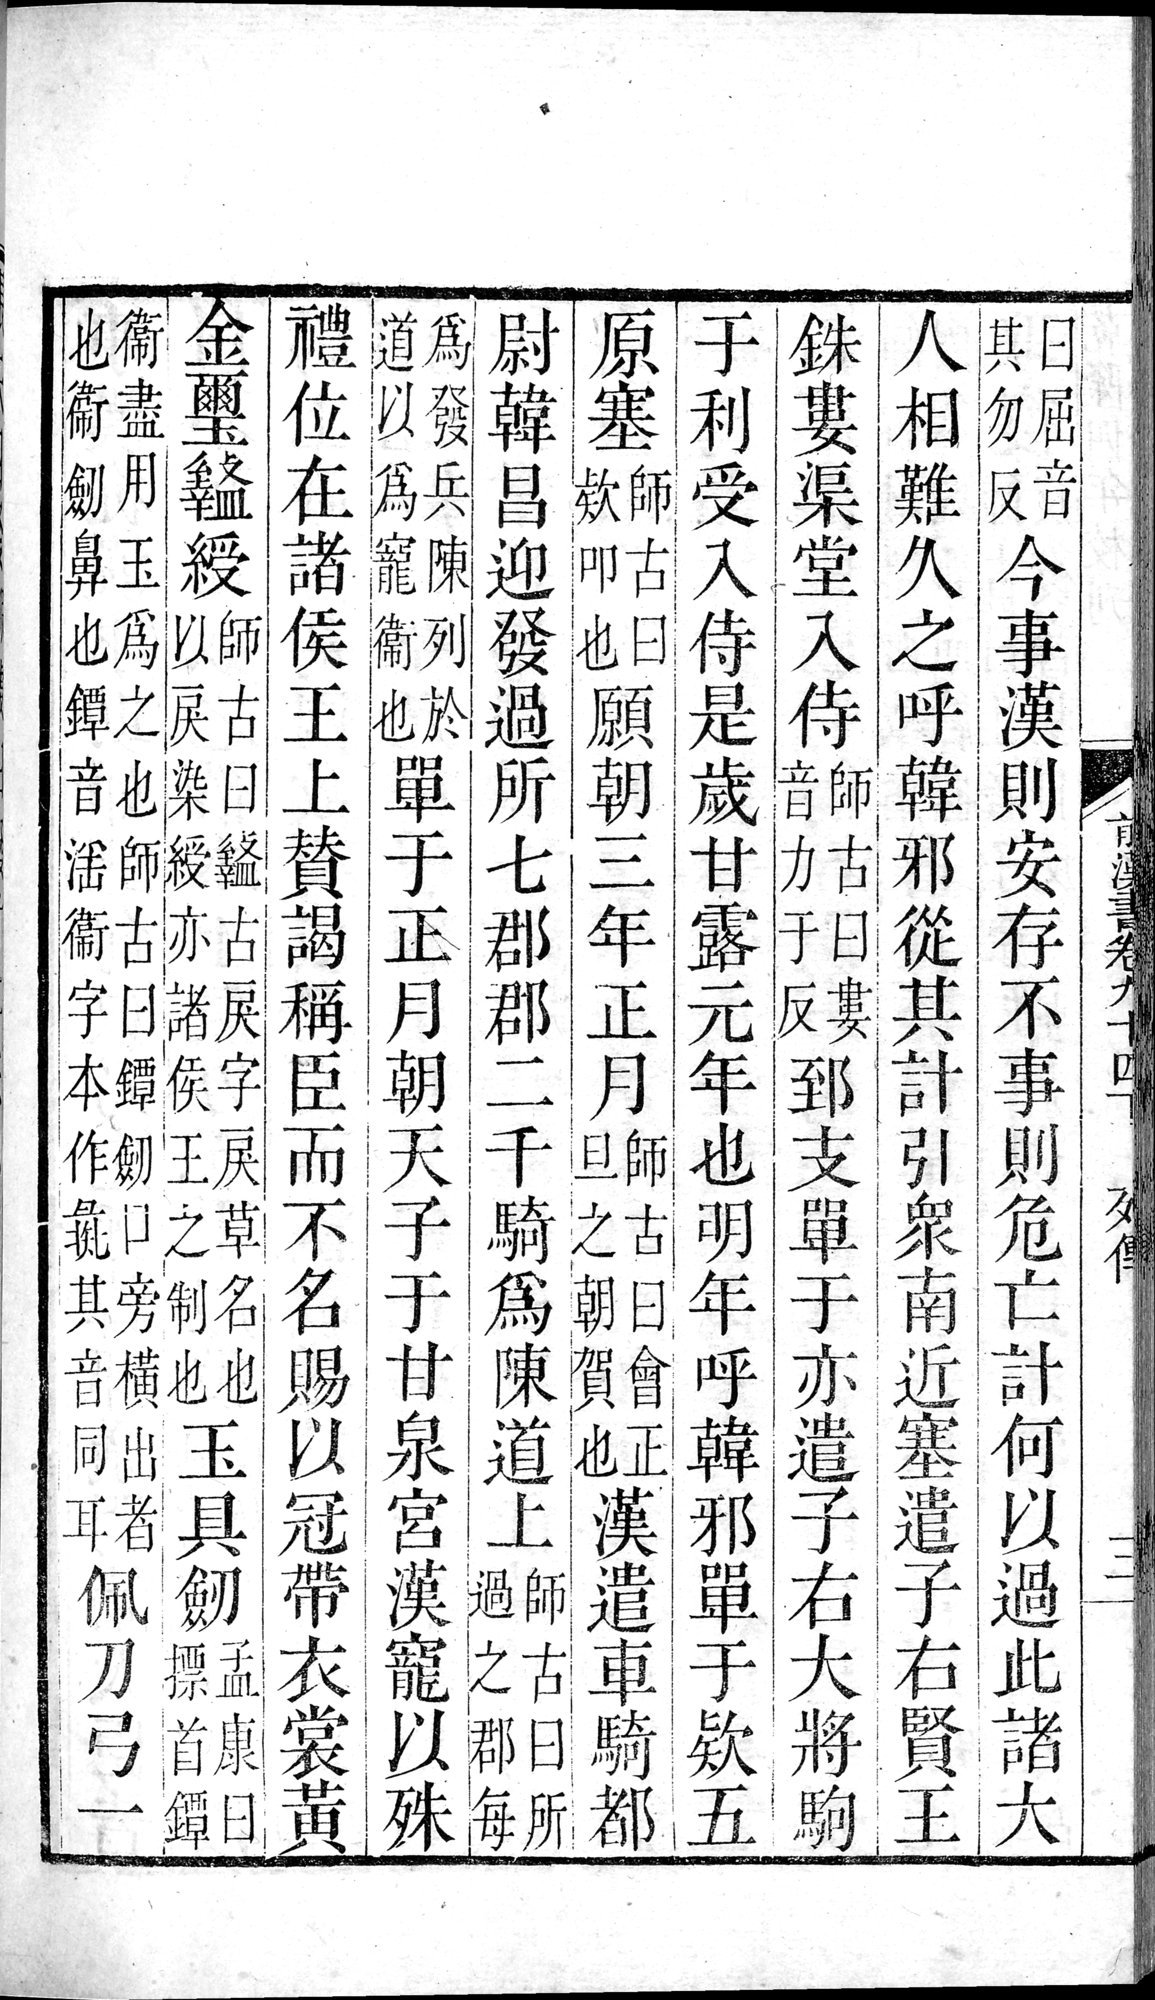 前漢書 : vol.94 bottom / Page 6 (Grayscale High Resolution Image)